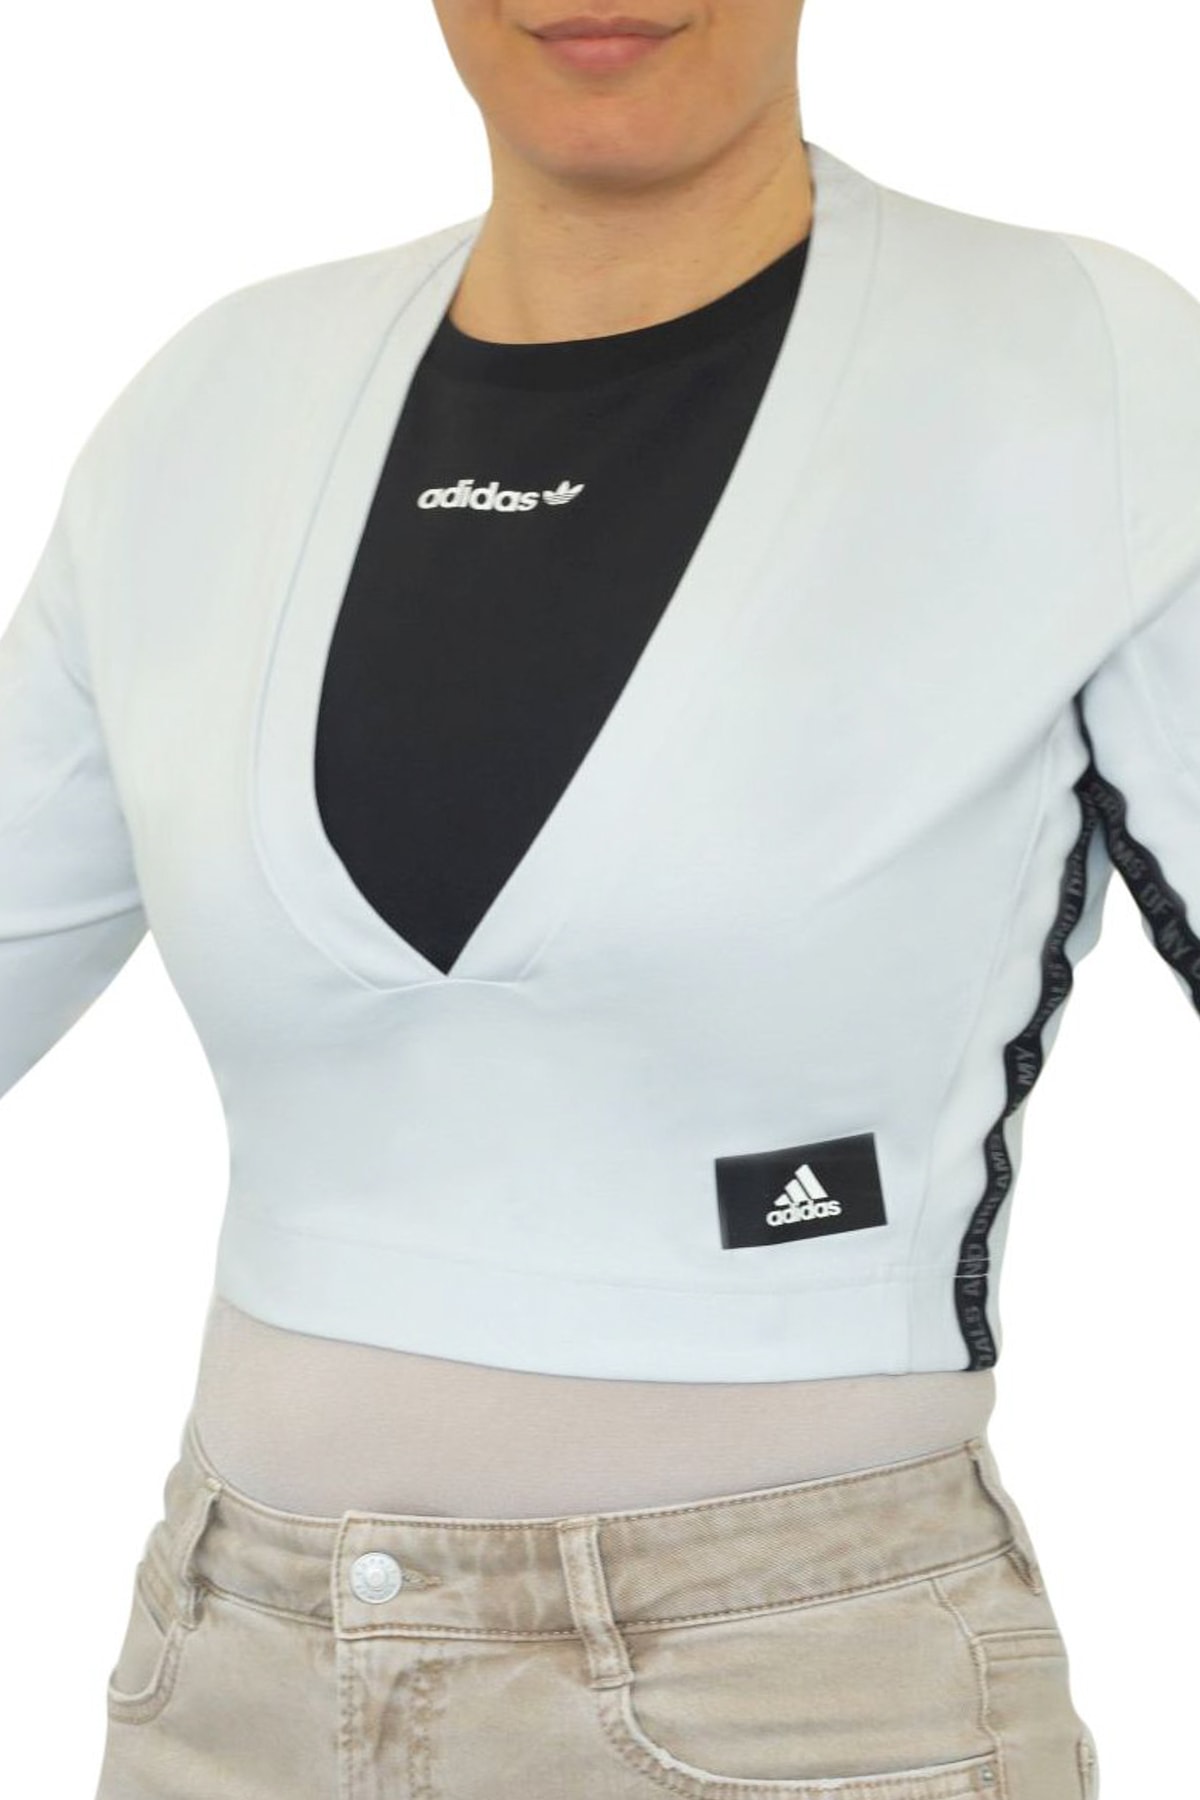 Спортивная одежда Укороченный топ Mission Victory adidas, белый